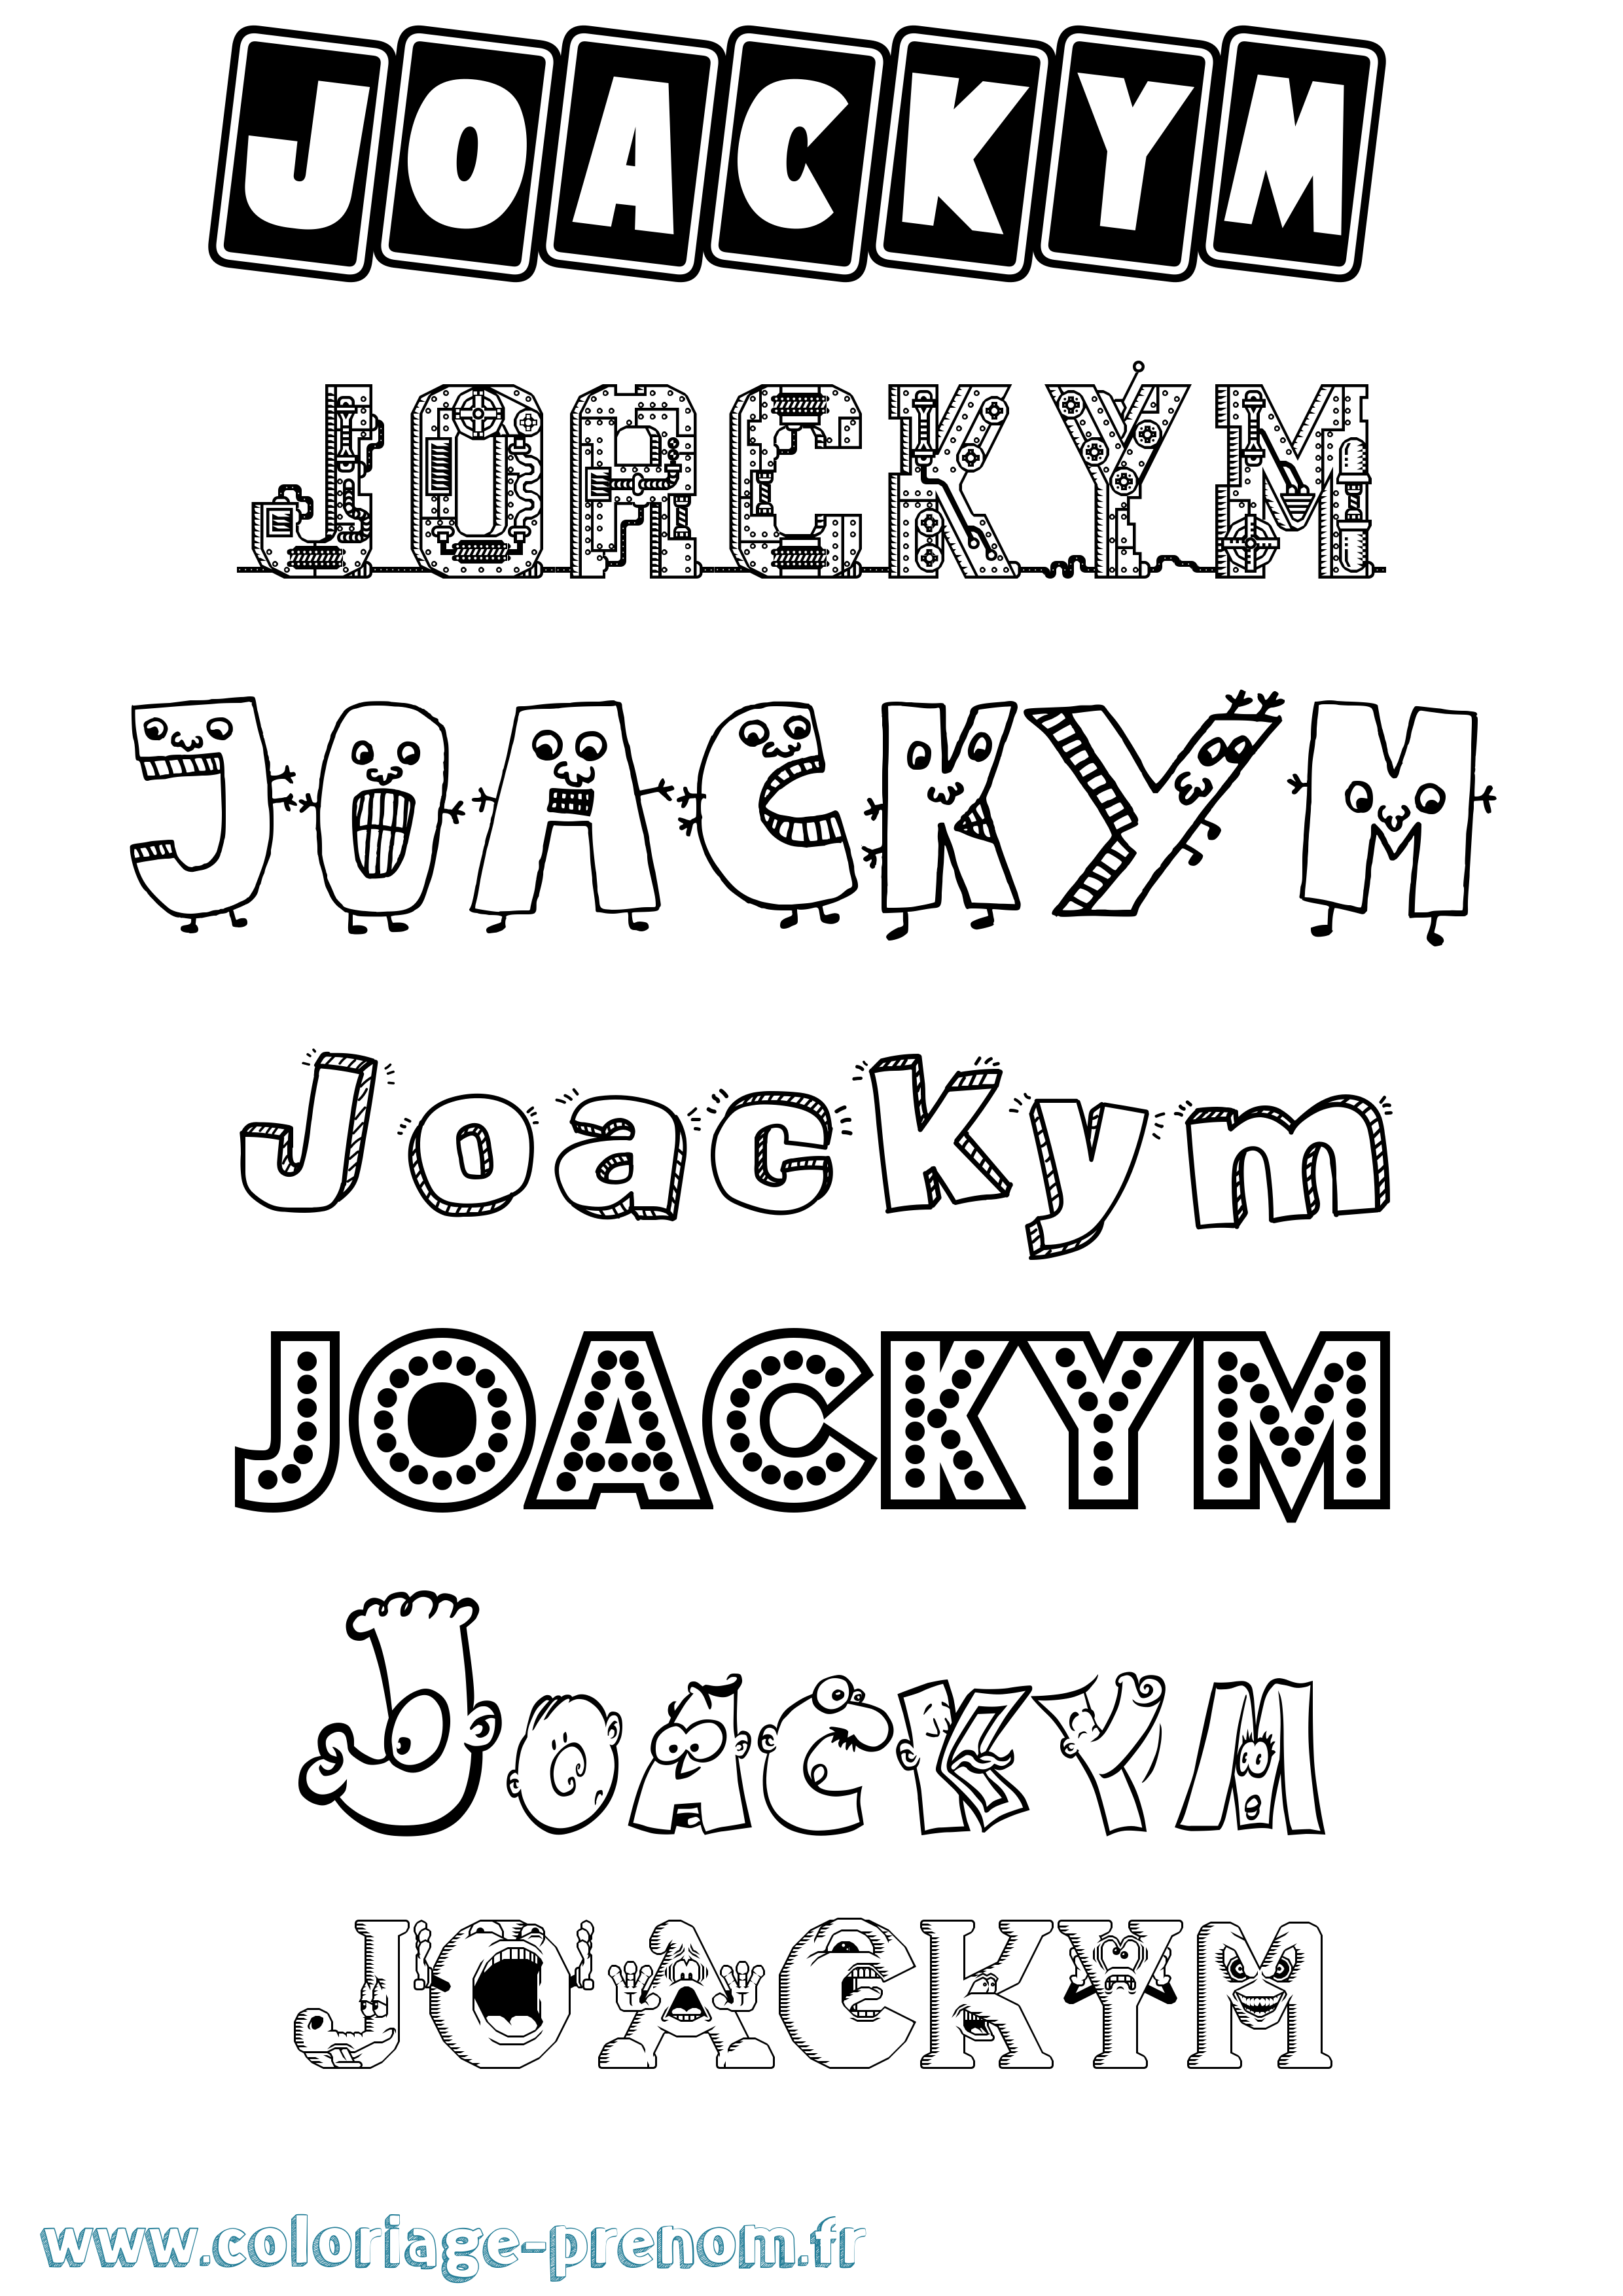 Coloriage prénom Joackym Fun